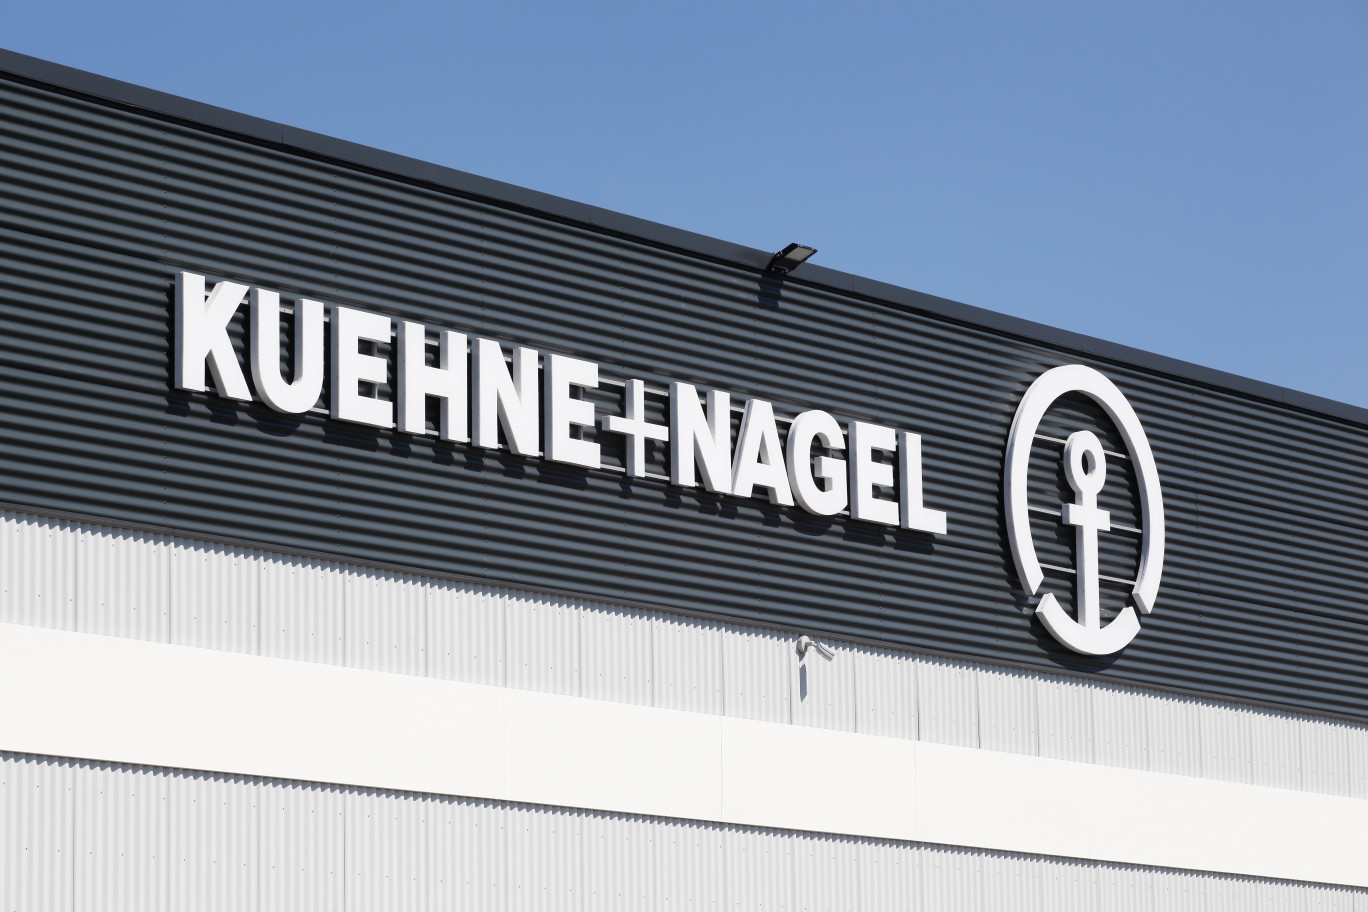 Kuehne+Nagel lance l’agrandissement de l’agence de Beaune